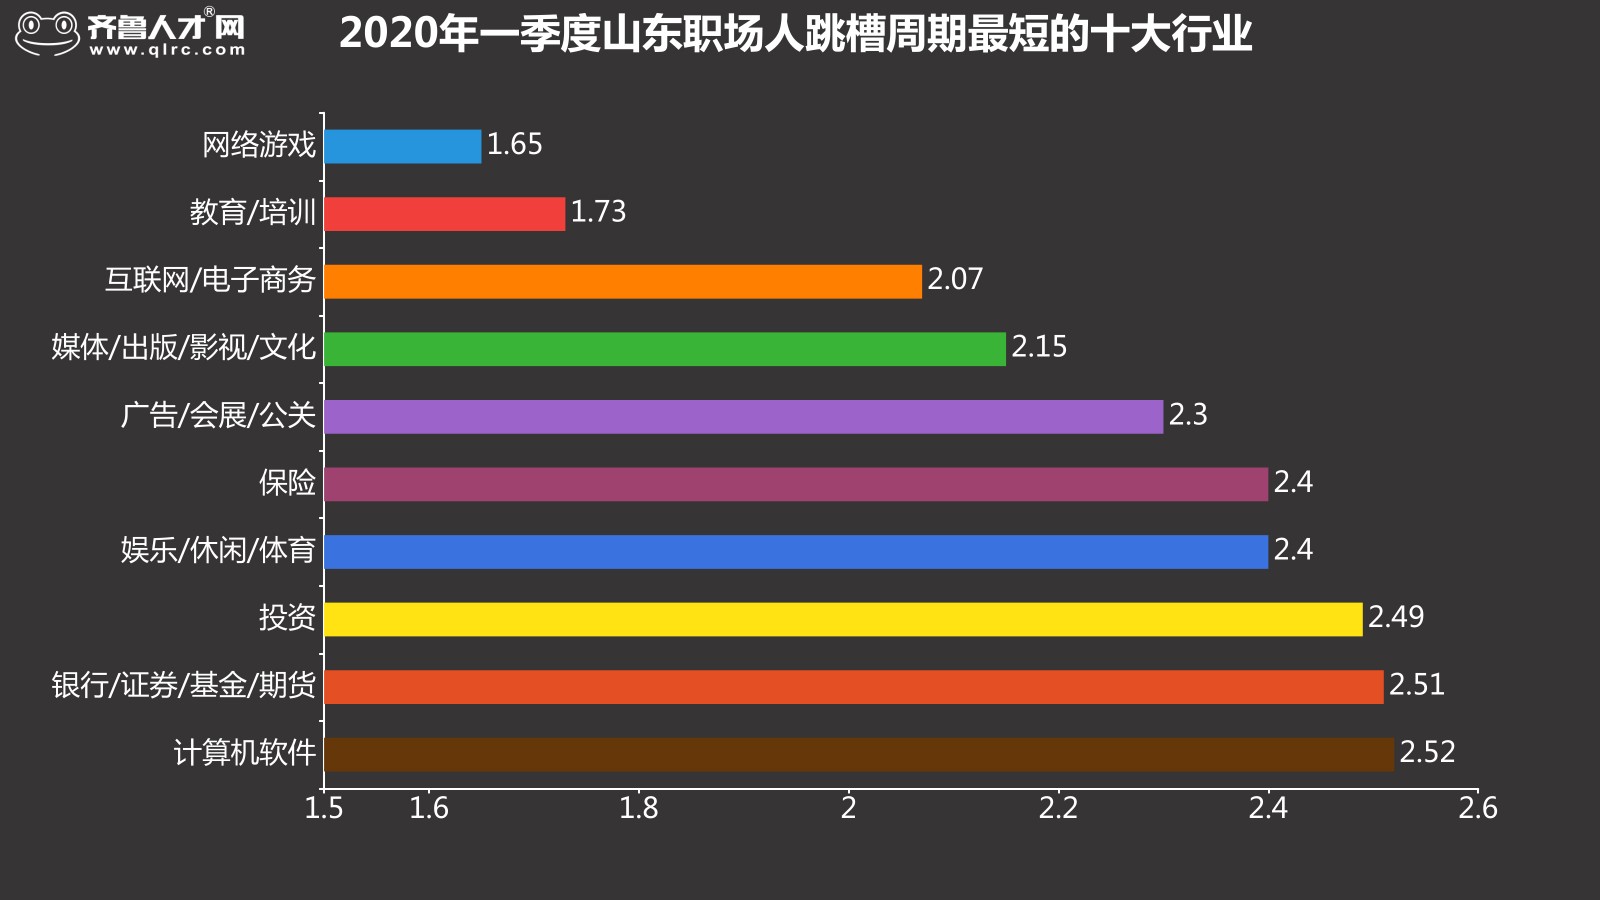 齊魯人才網-2020年一季度跳槽數據圖3.jpg